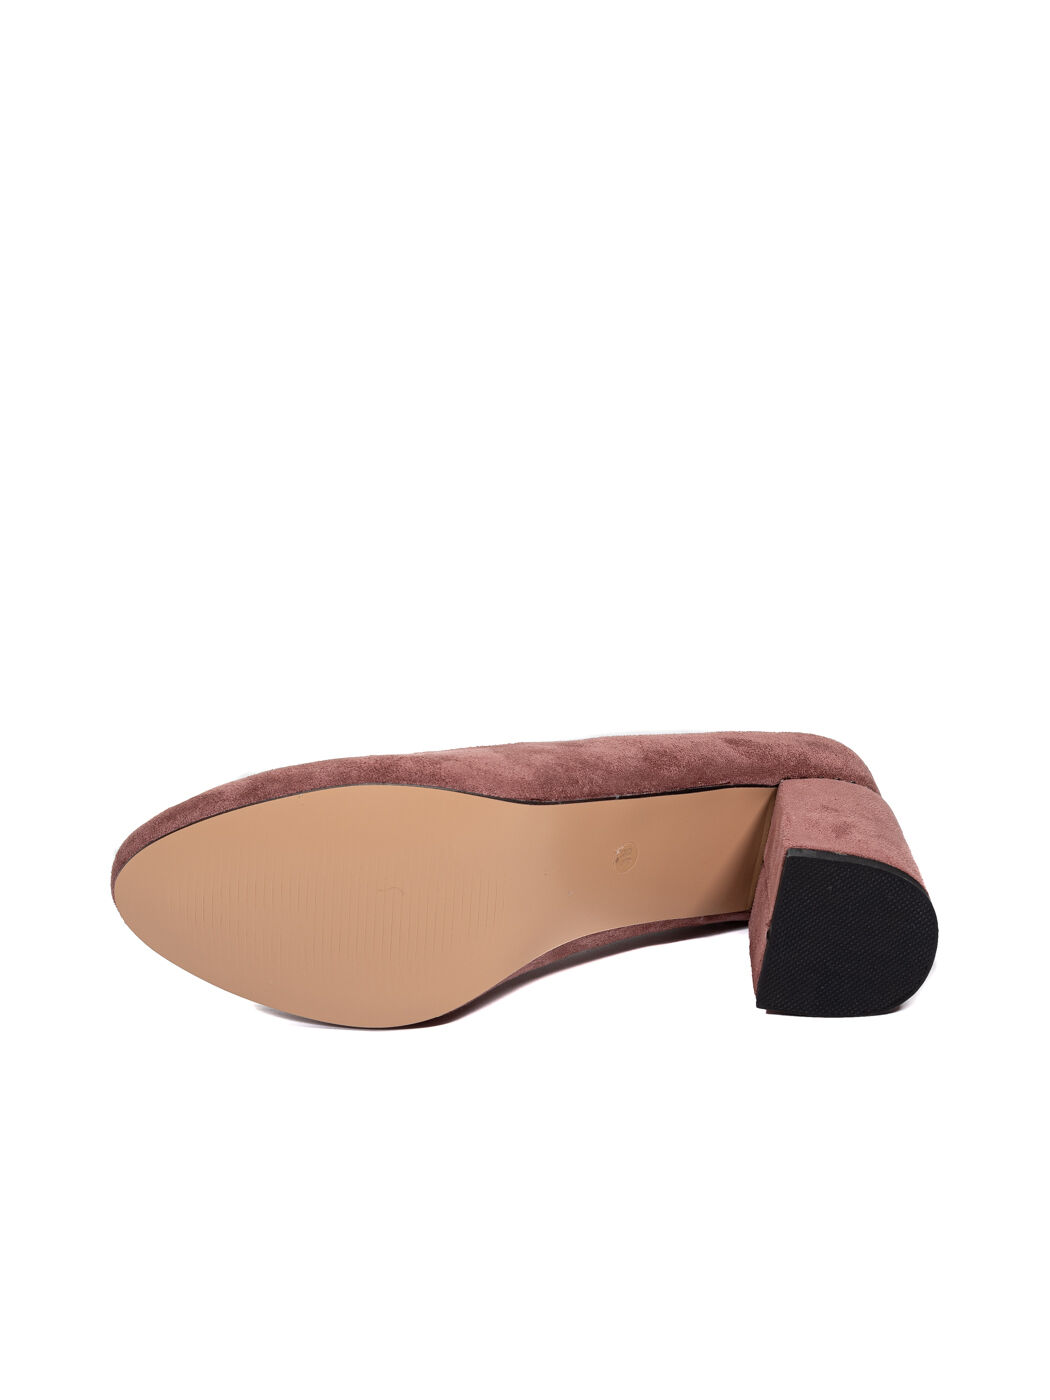 Туфли женские розовые экозамша каблук устойчивый демисезон DM вид 1